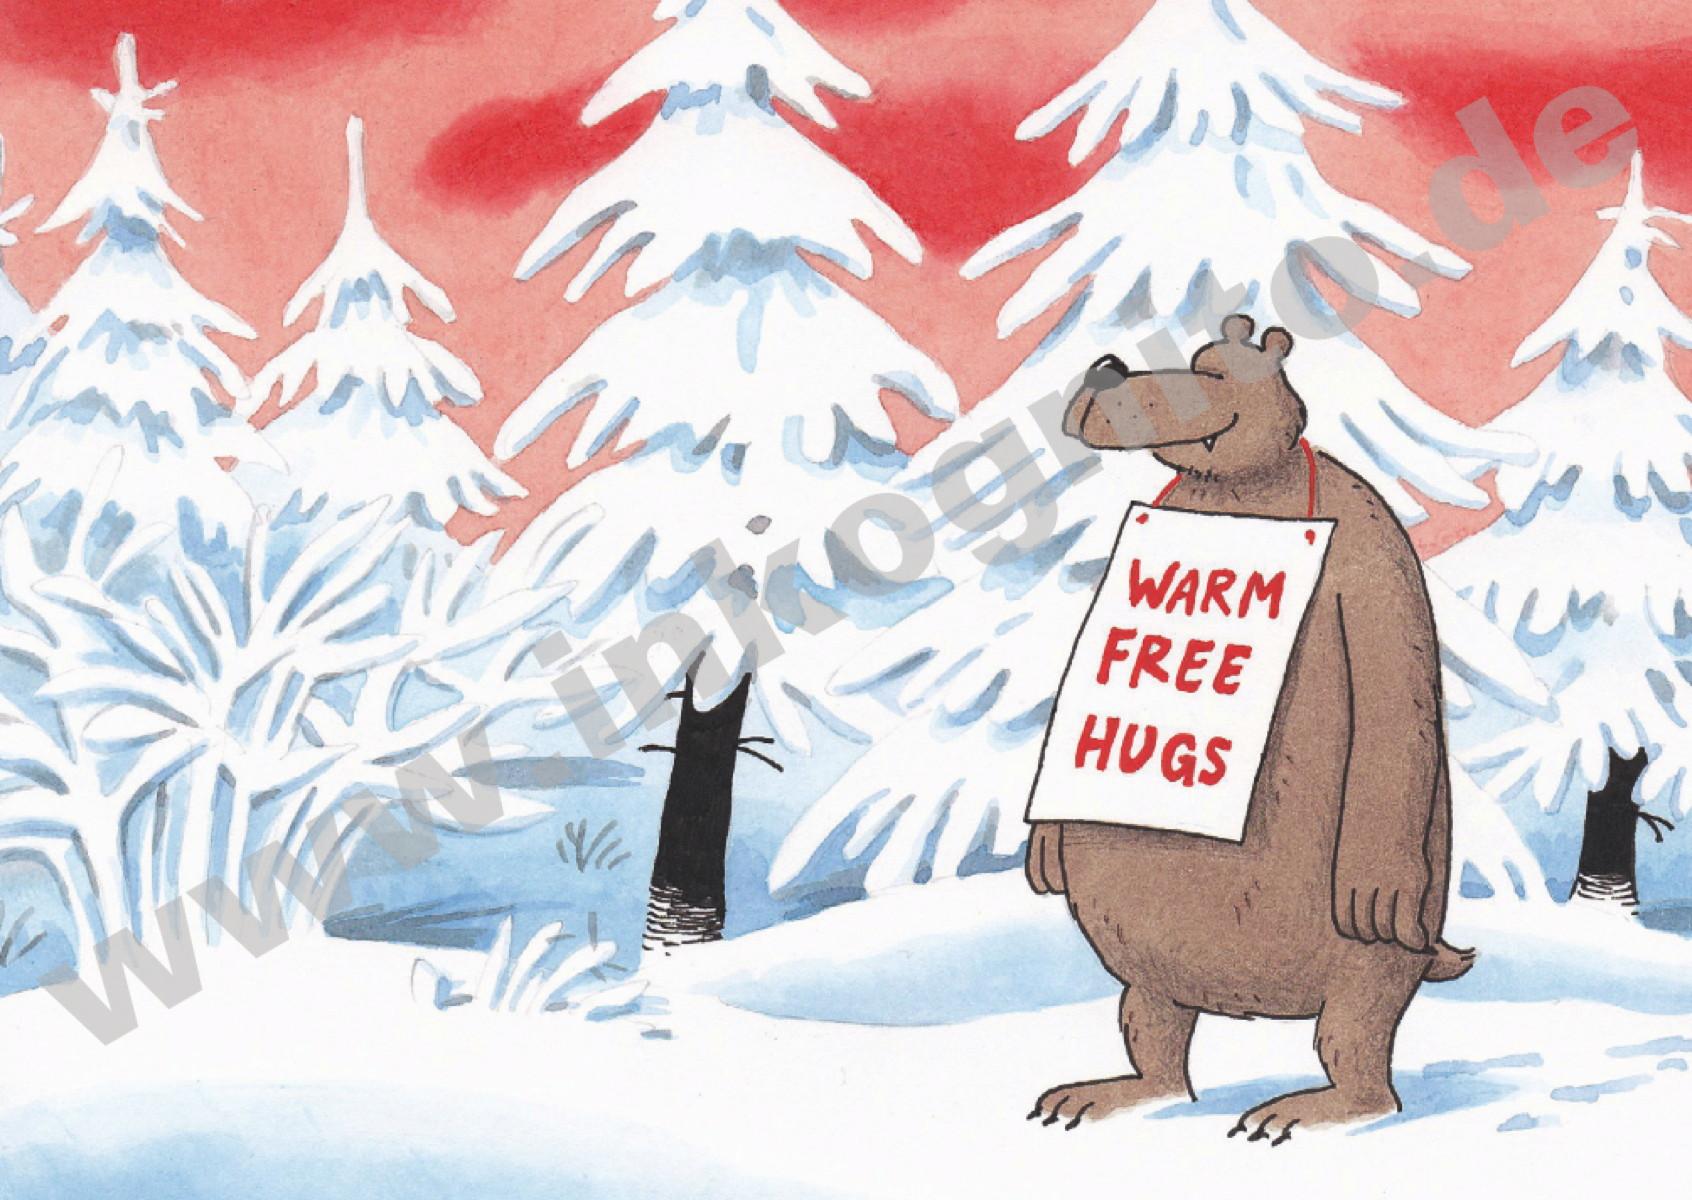 Warm Free Hugs